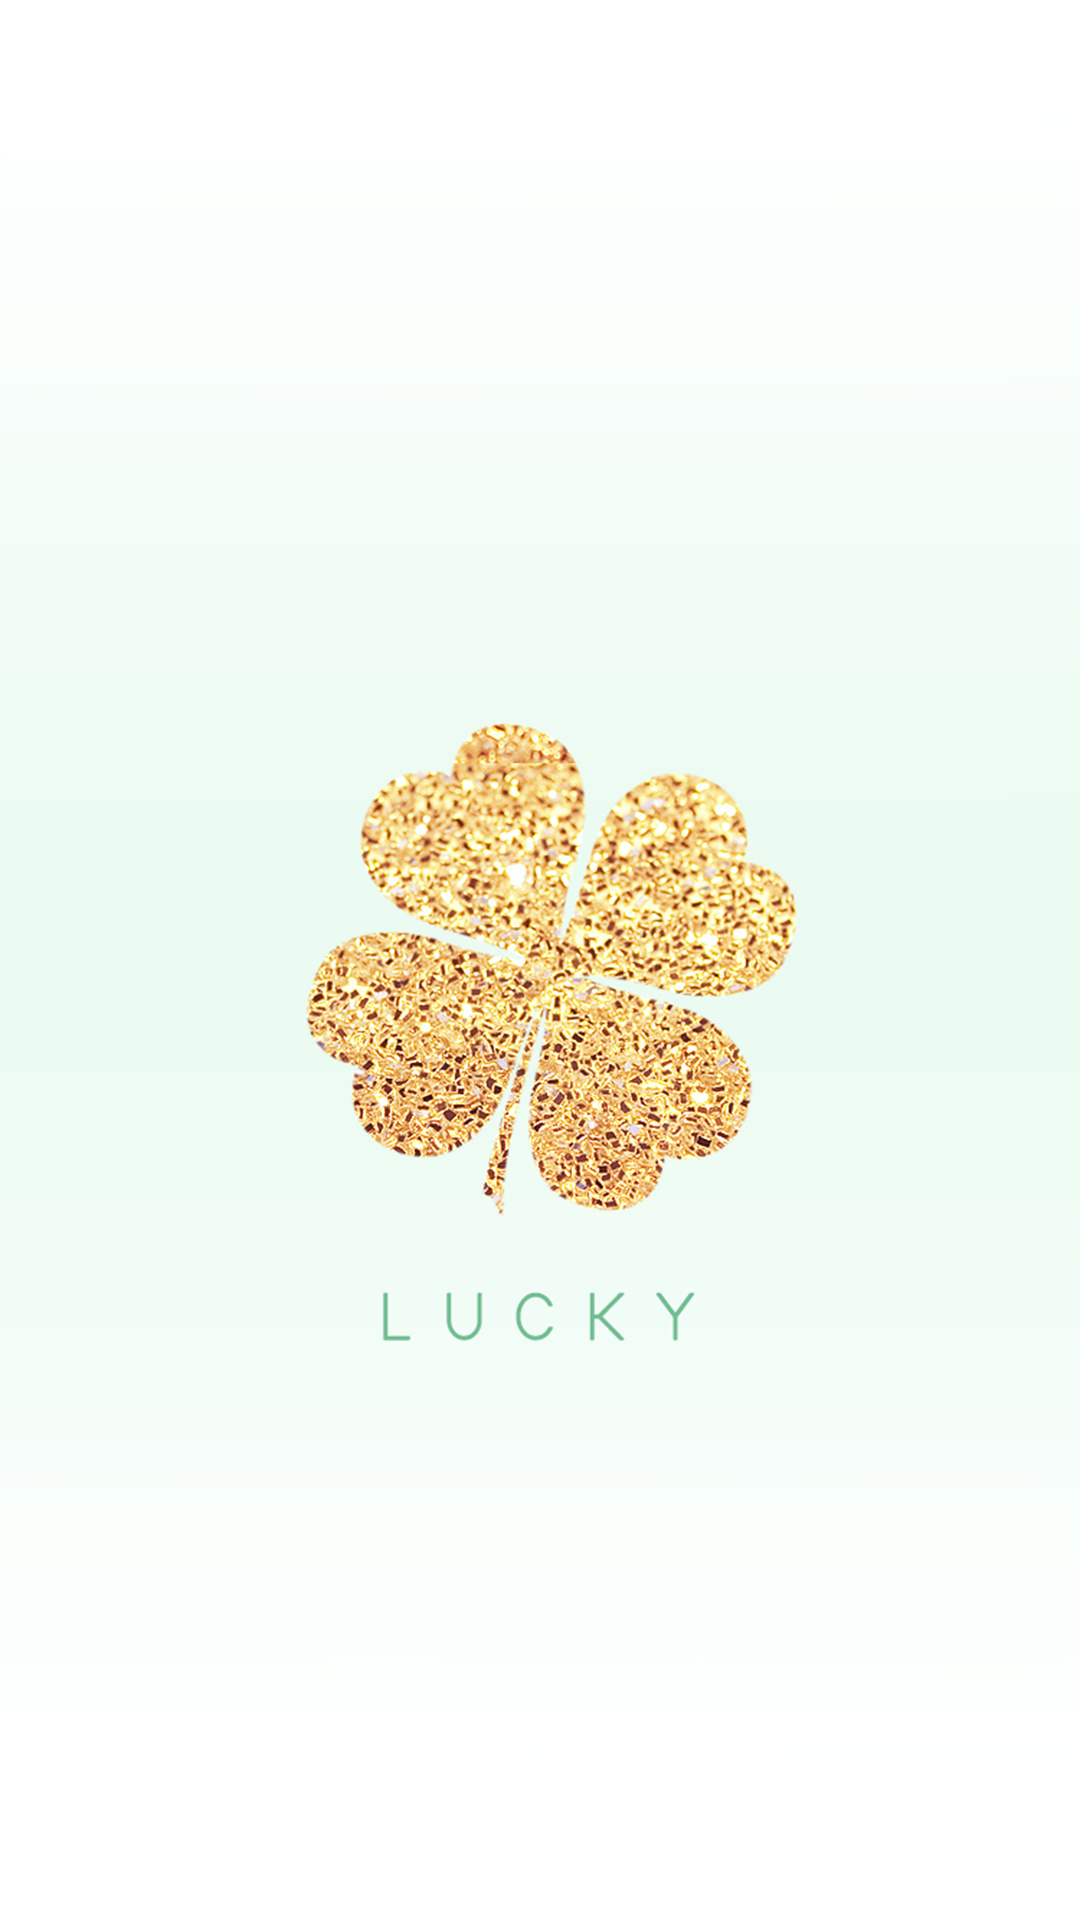 Irish Shamrock, Shamrock wallpapers, Irish symbol, Lucky charm, 1080x1920 Full HD Phone